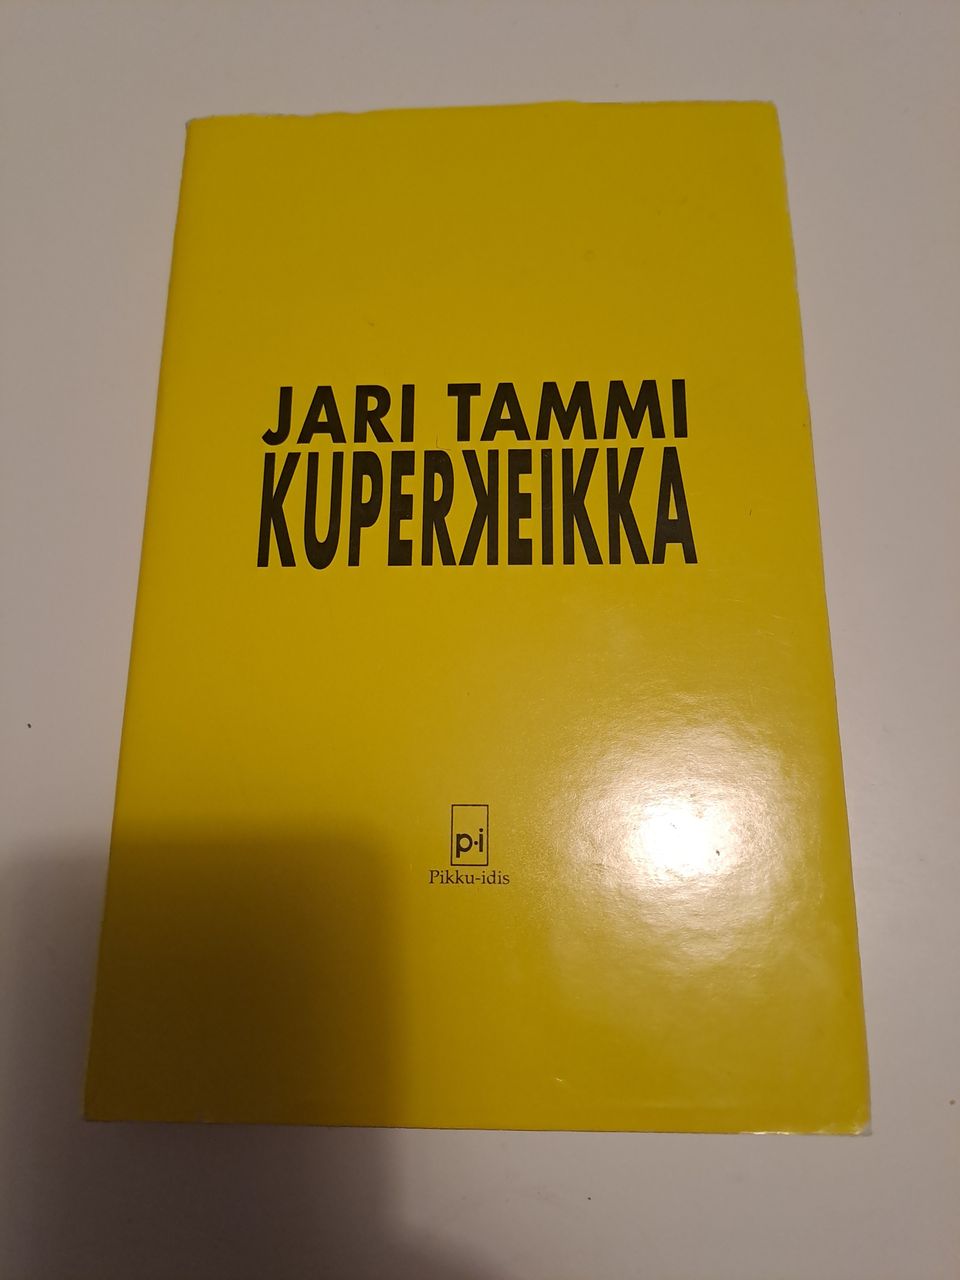 Kuperkeikka, Jari Tammi,1991 pikku-idis